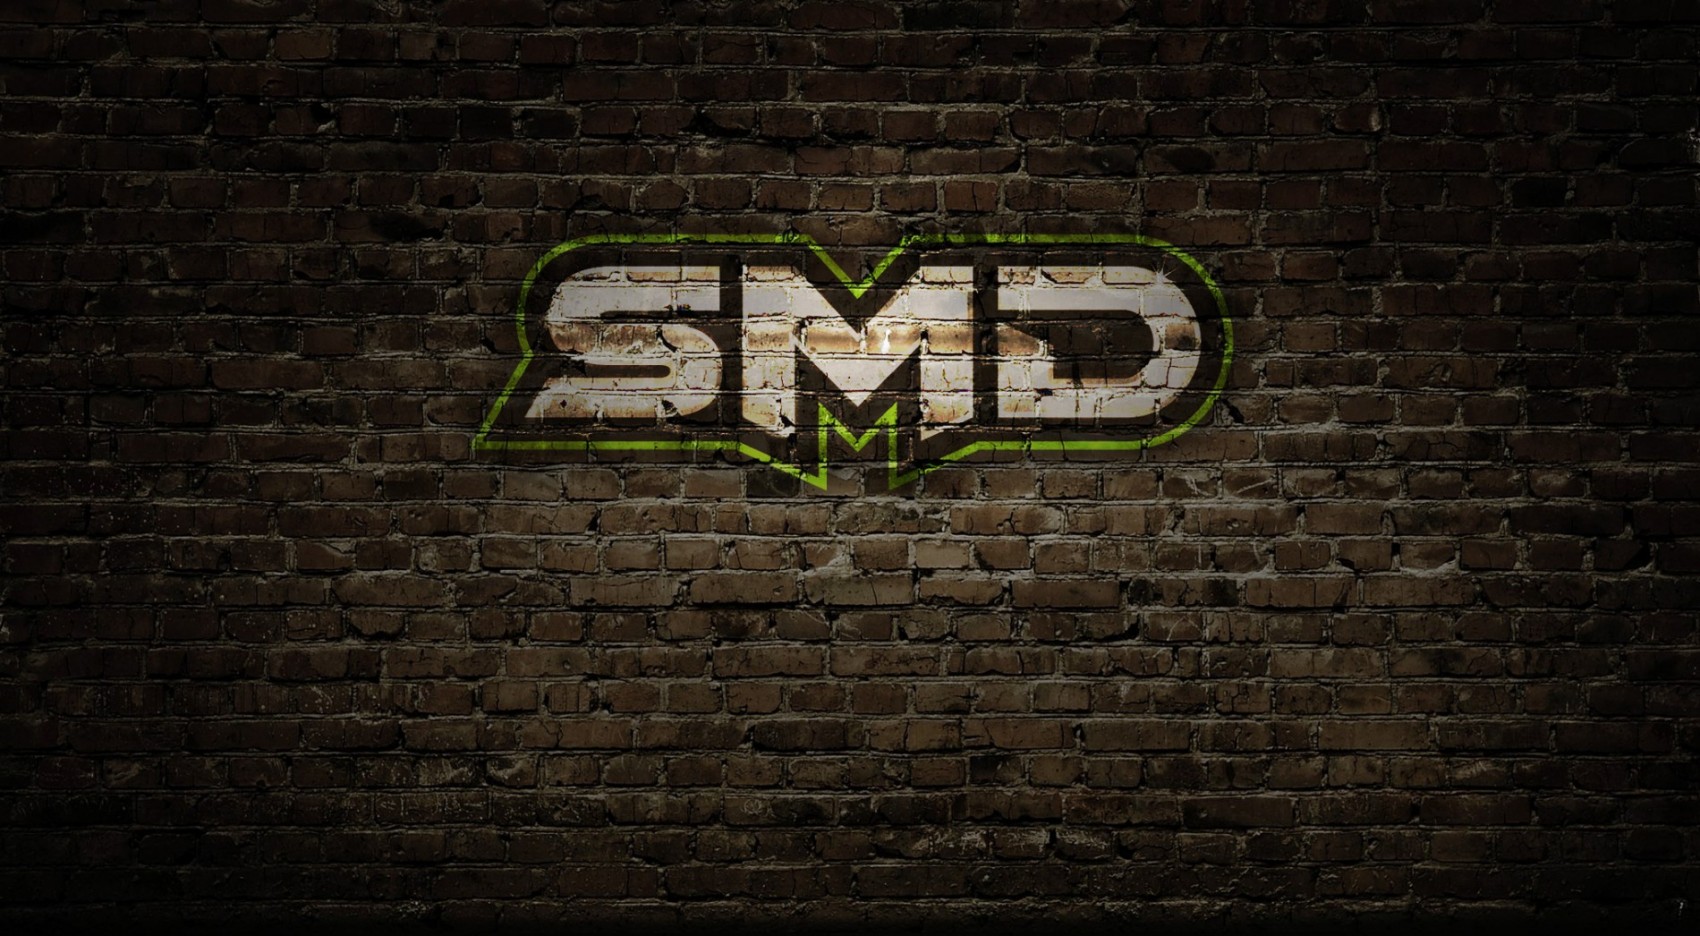 SMD_Brick_Wall_v2-e1426128833799